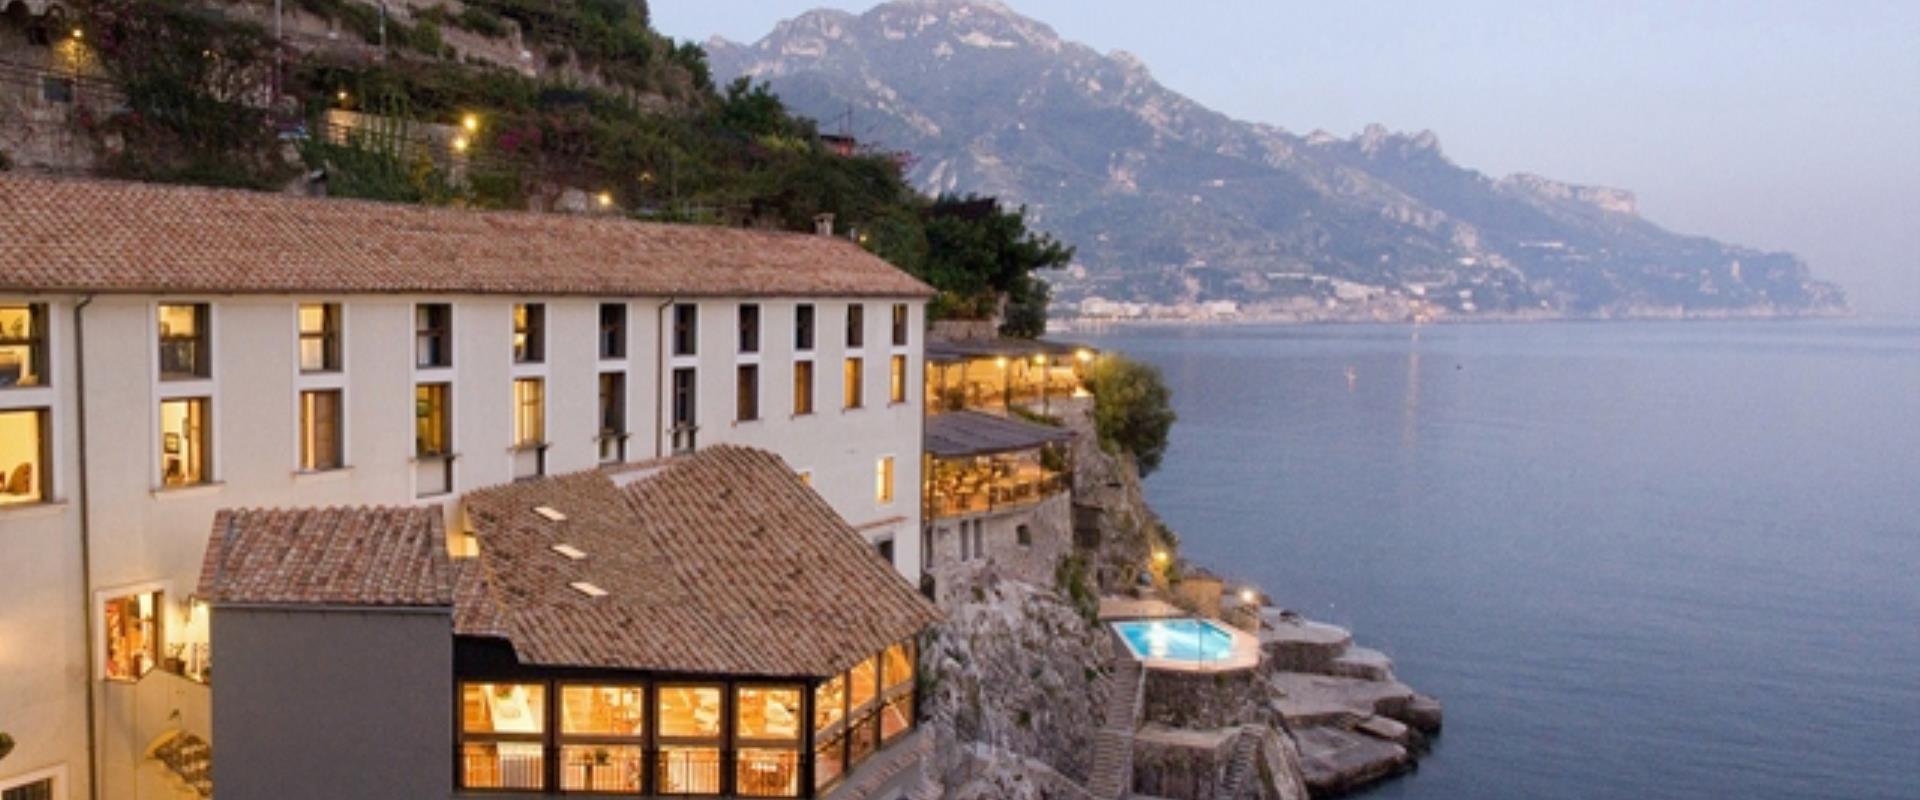 La bellezza della costiera Amalfitana direttamente dalle stanze del BW Hotel Marmorata